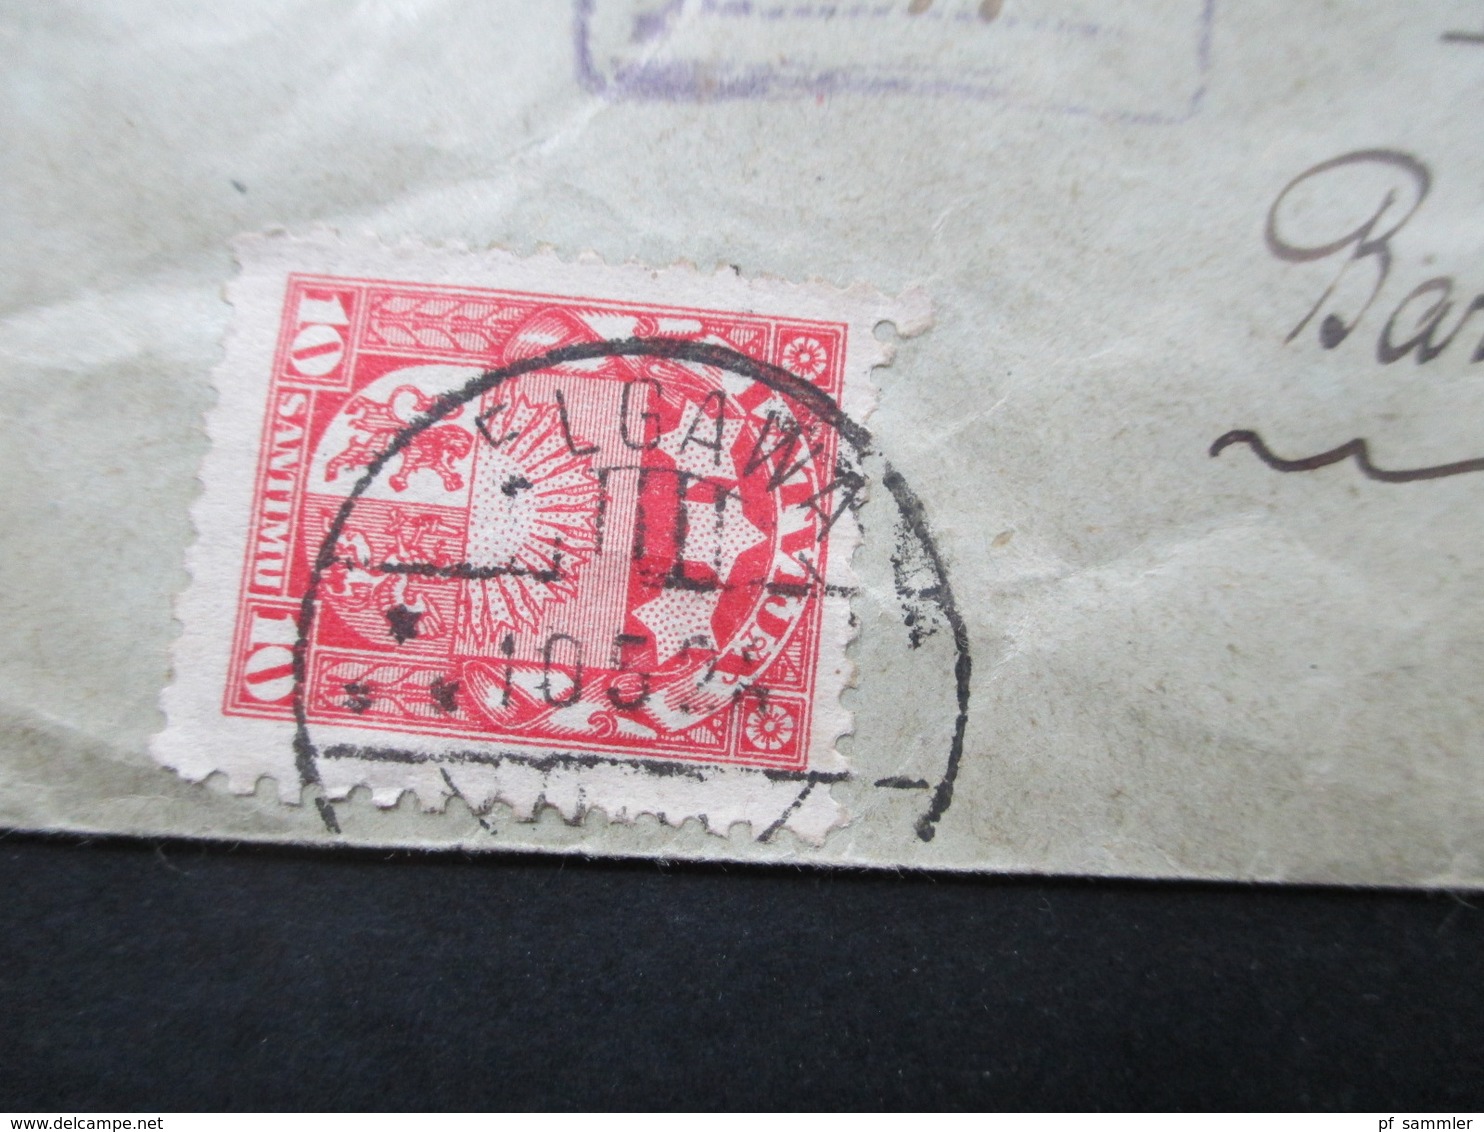 Lettland 1924 Wertbrief / Einschreiben gestempelter R-Zettel Jelgawa via Litauen nach Hamburg Michel Nr. 98 MiF